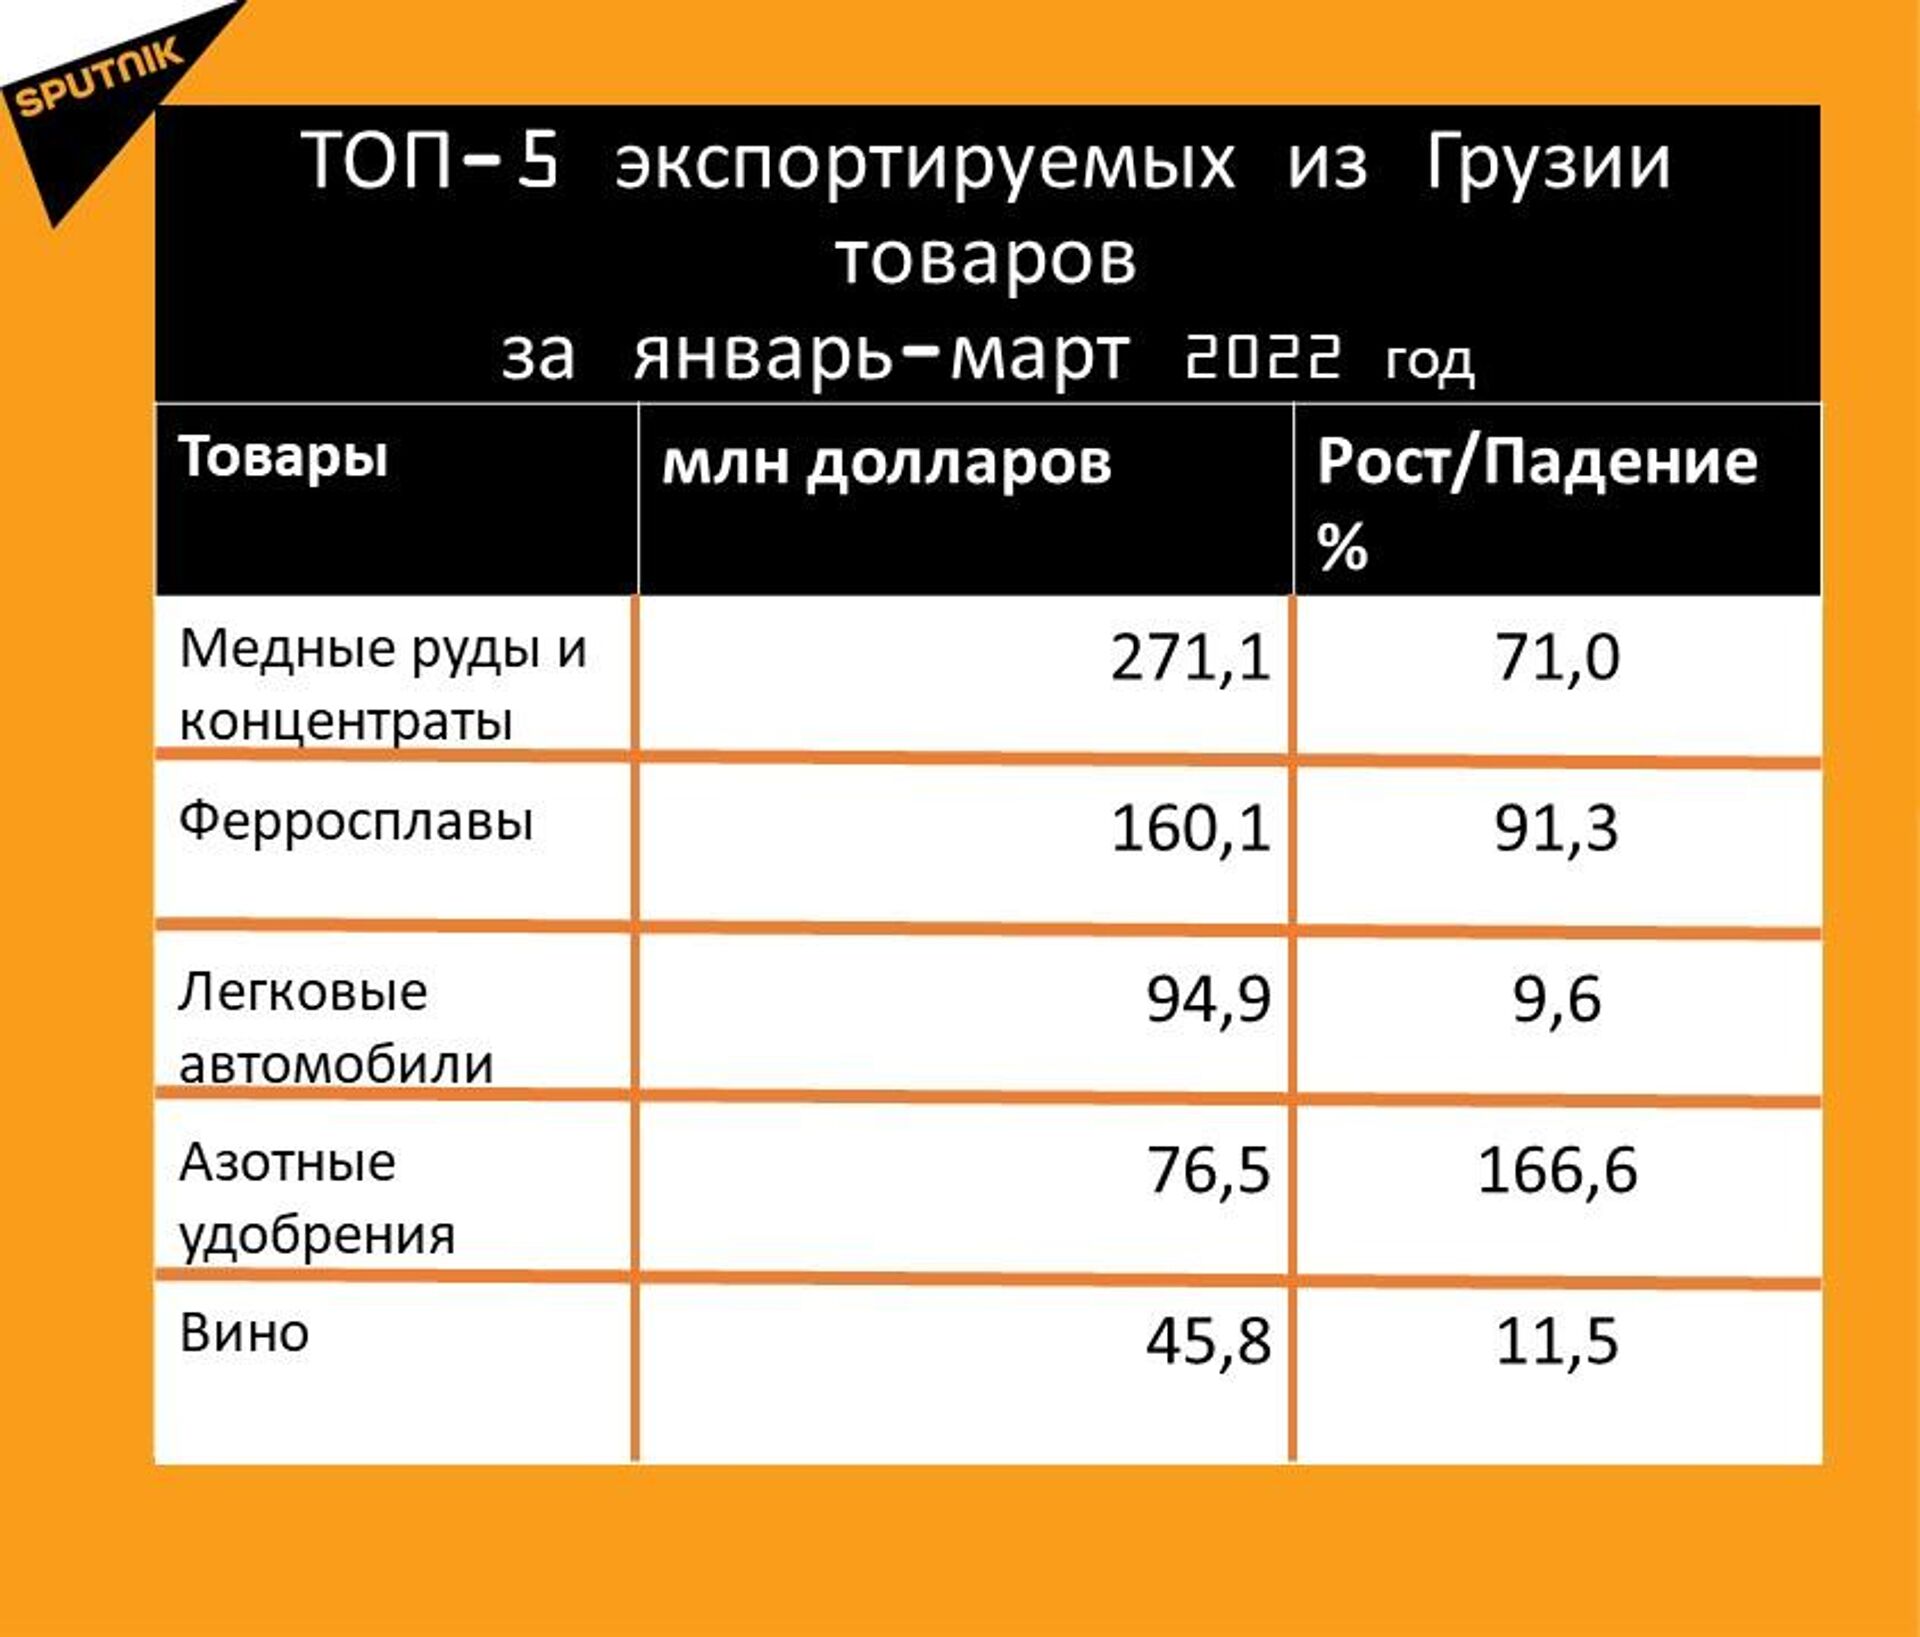 Статистика внешнеторгового оборота Грузии за январь-март 2022 года, экспорт - Sputnik Грузия, 1920, 28.04.2022